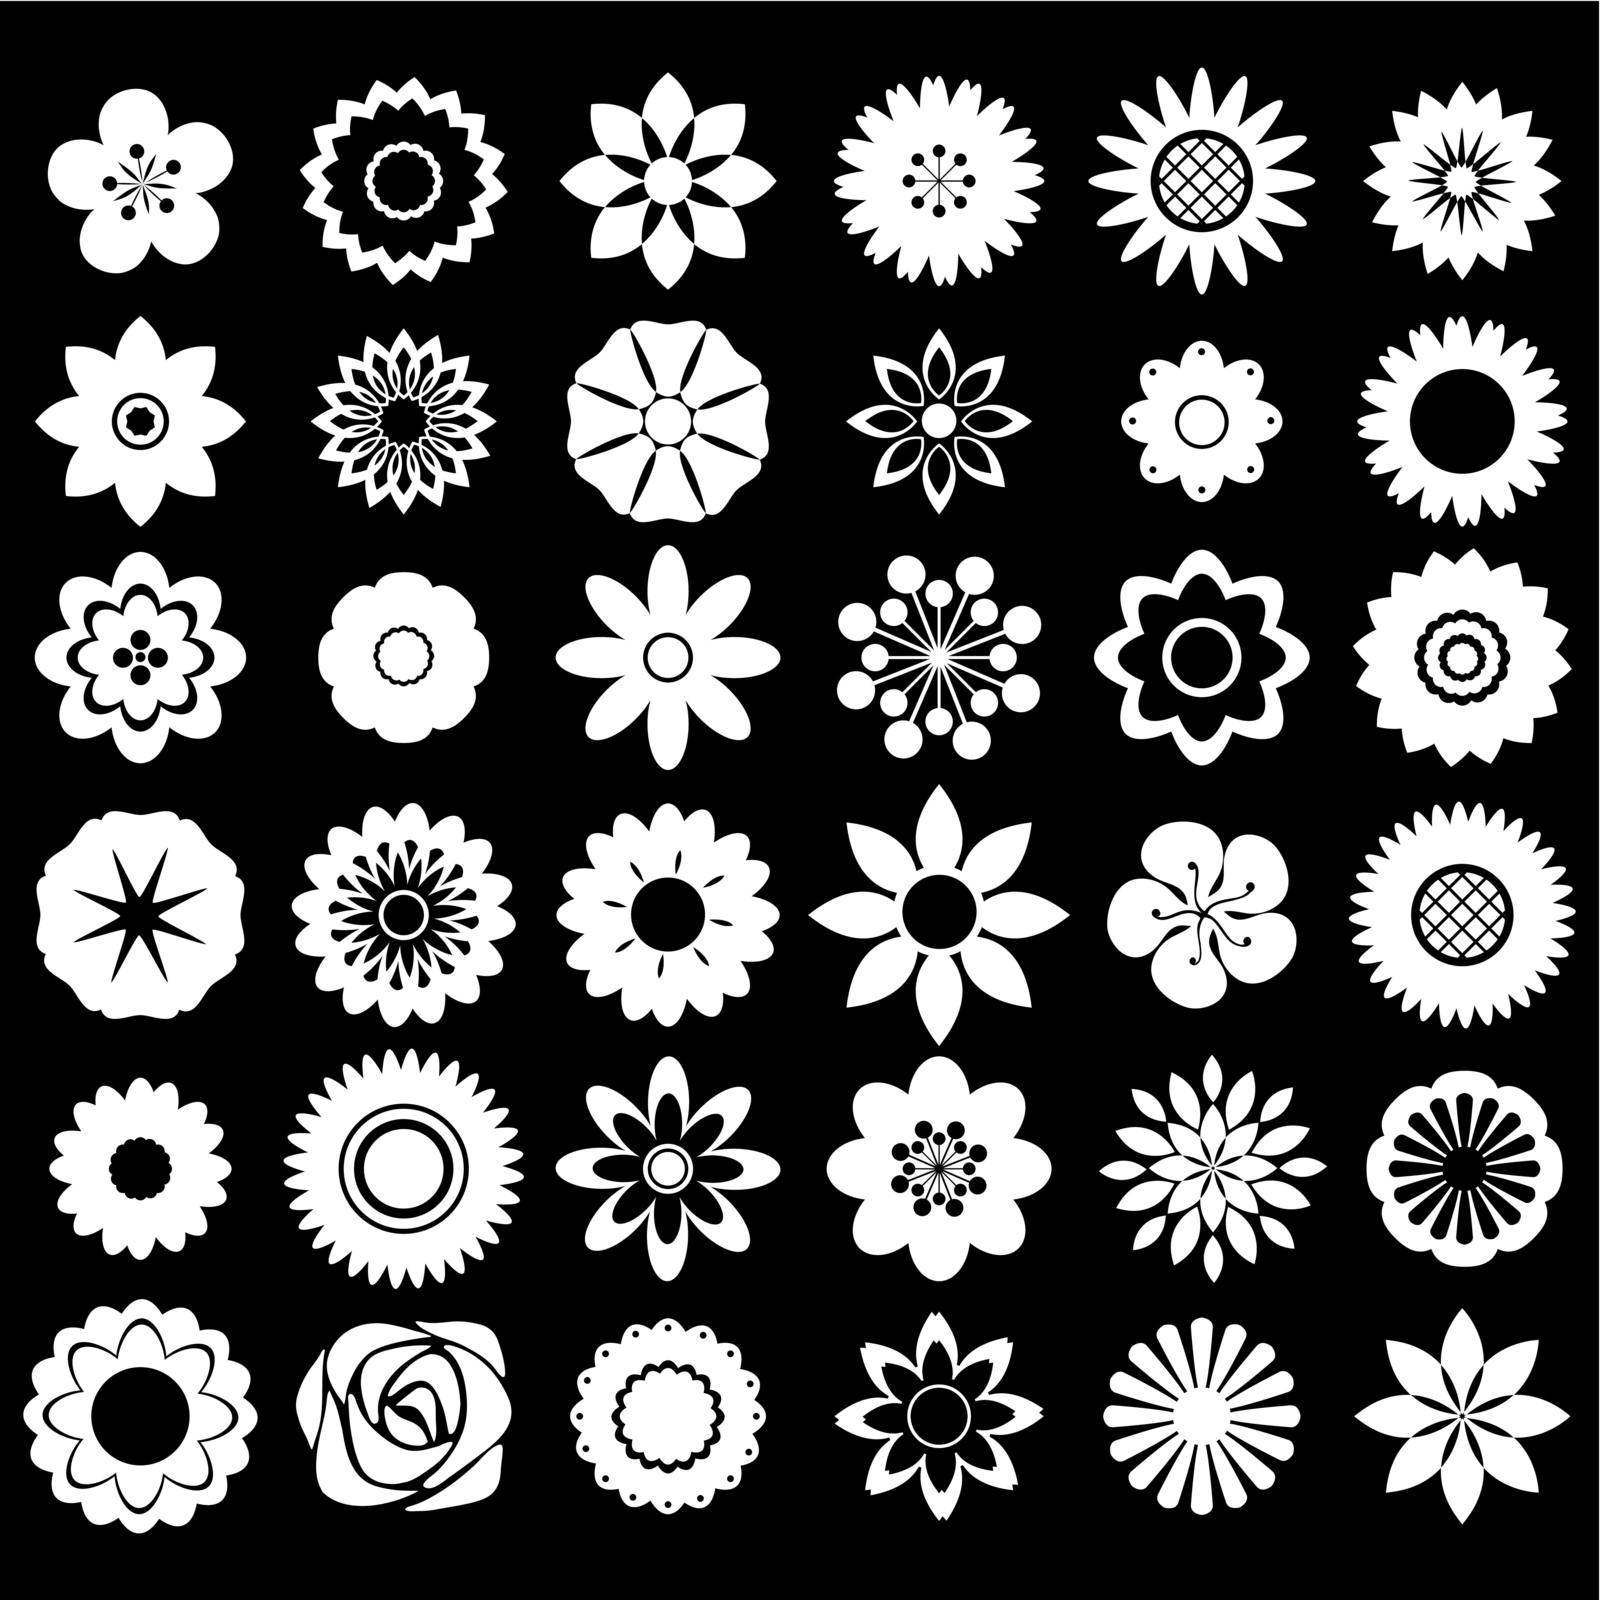 Flower design patterns on black background